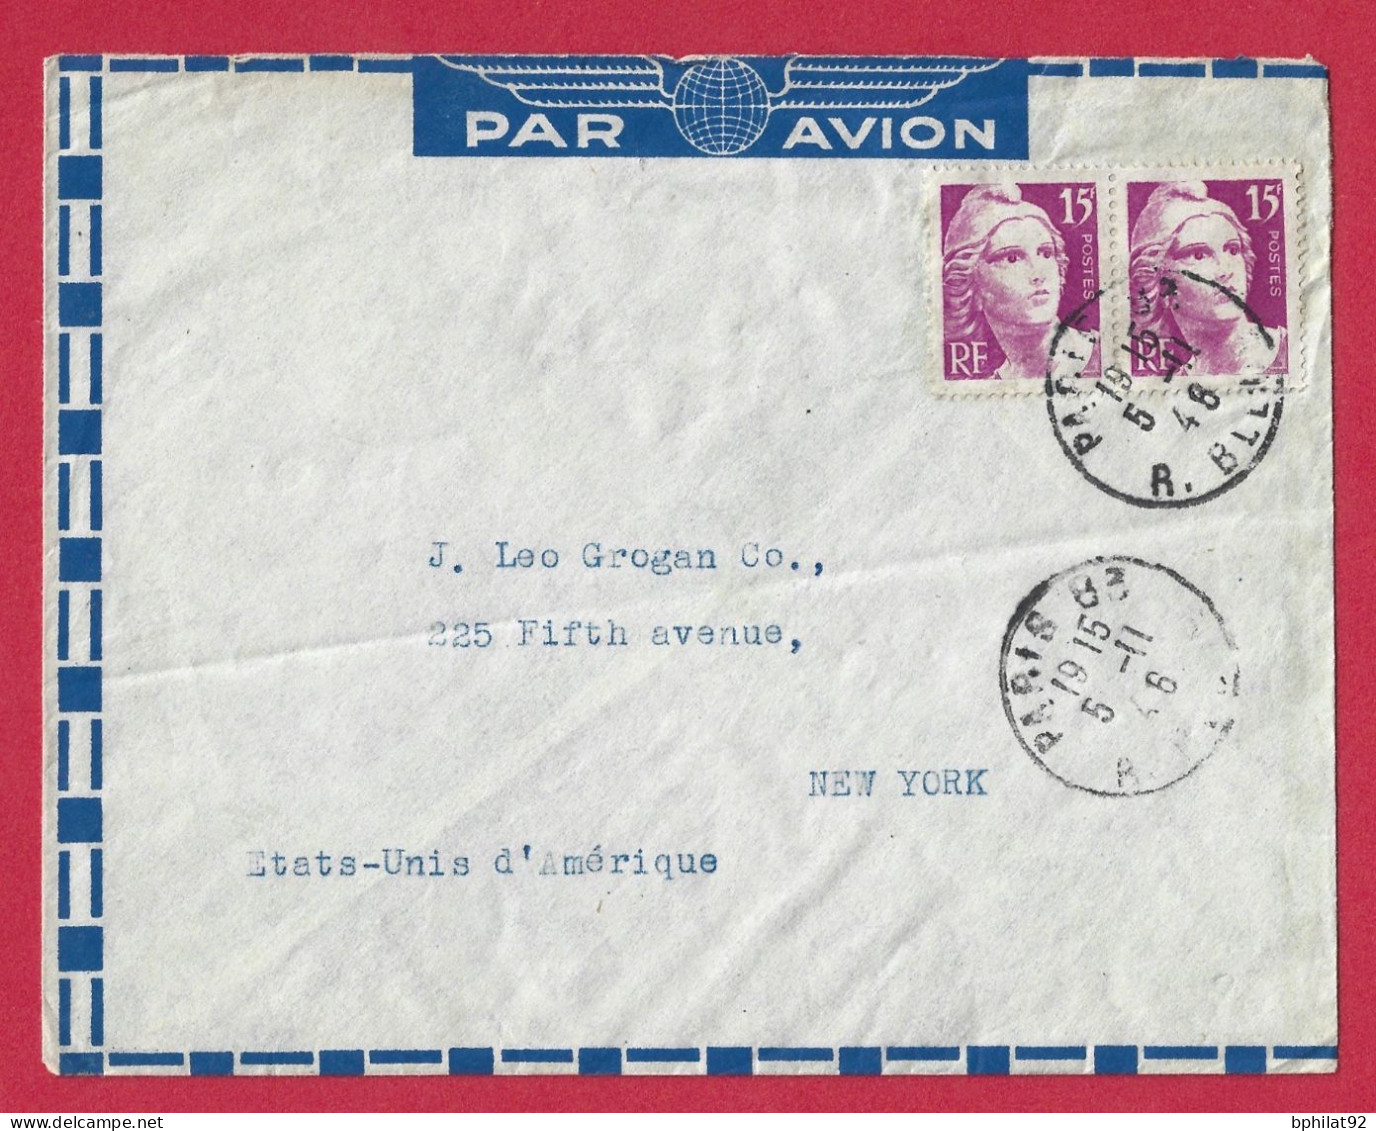 !!! LETTRE PAR AVION DE PARIS POUR NEW-YORK AVEC AFFRANCHISSEMENT PAIRE GANDON 15F DE 1948 - Lettres & Documents